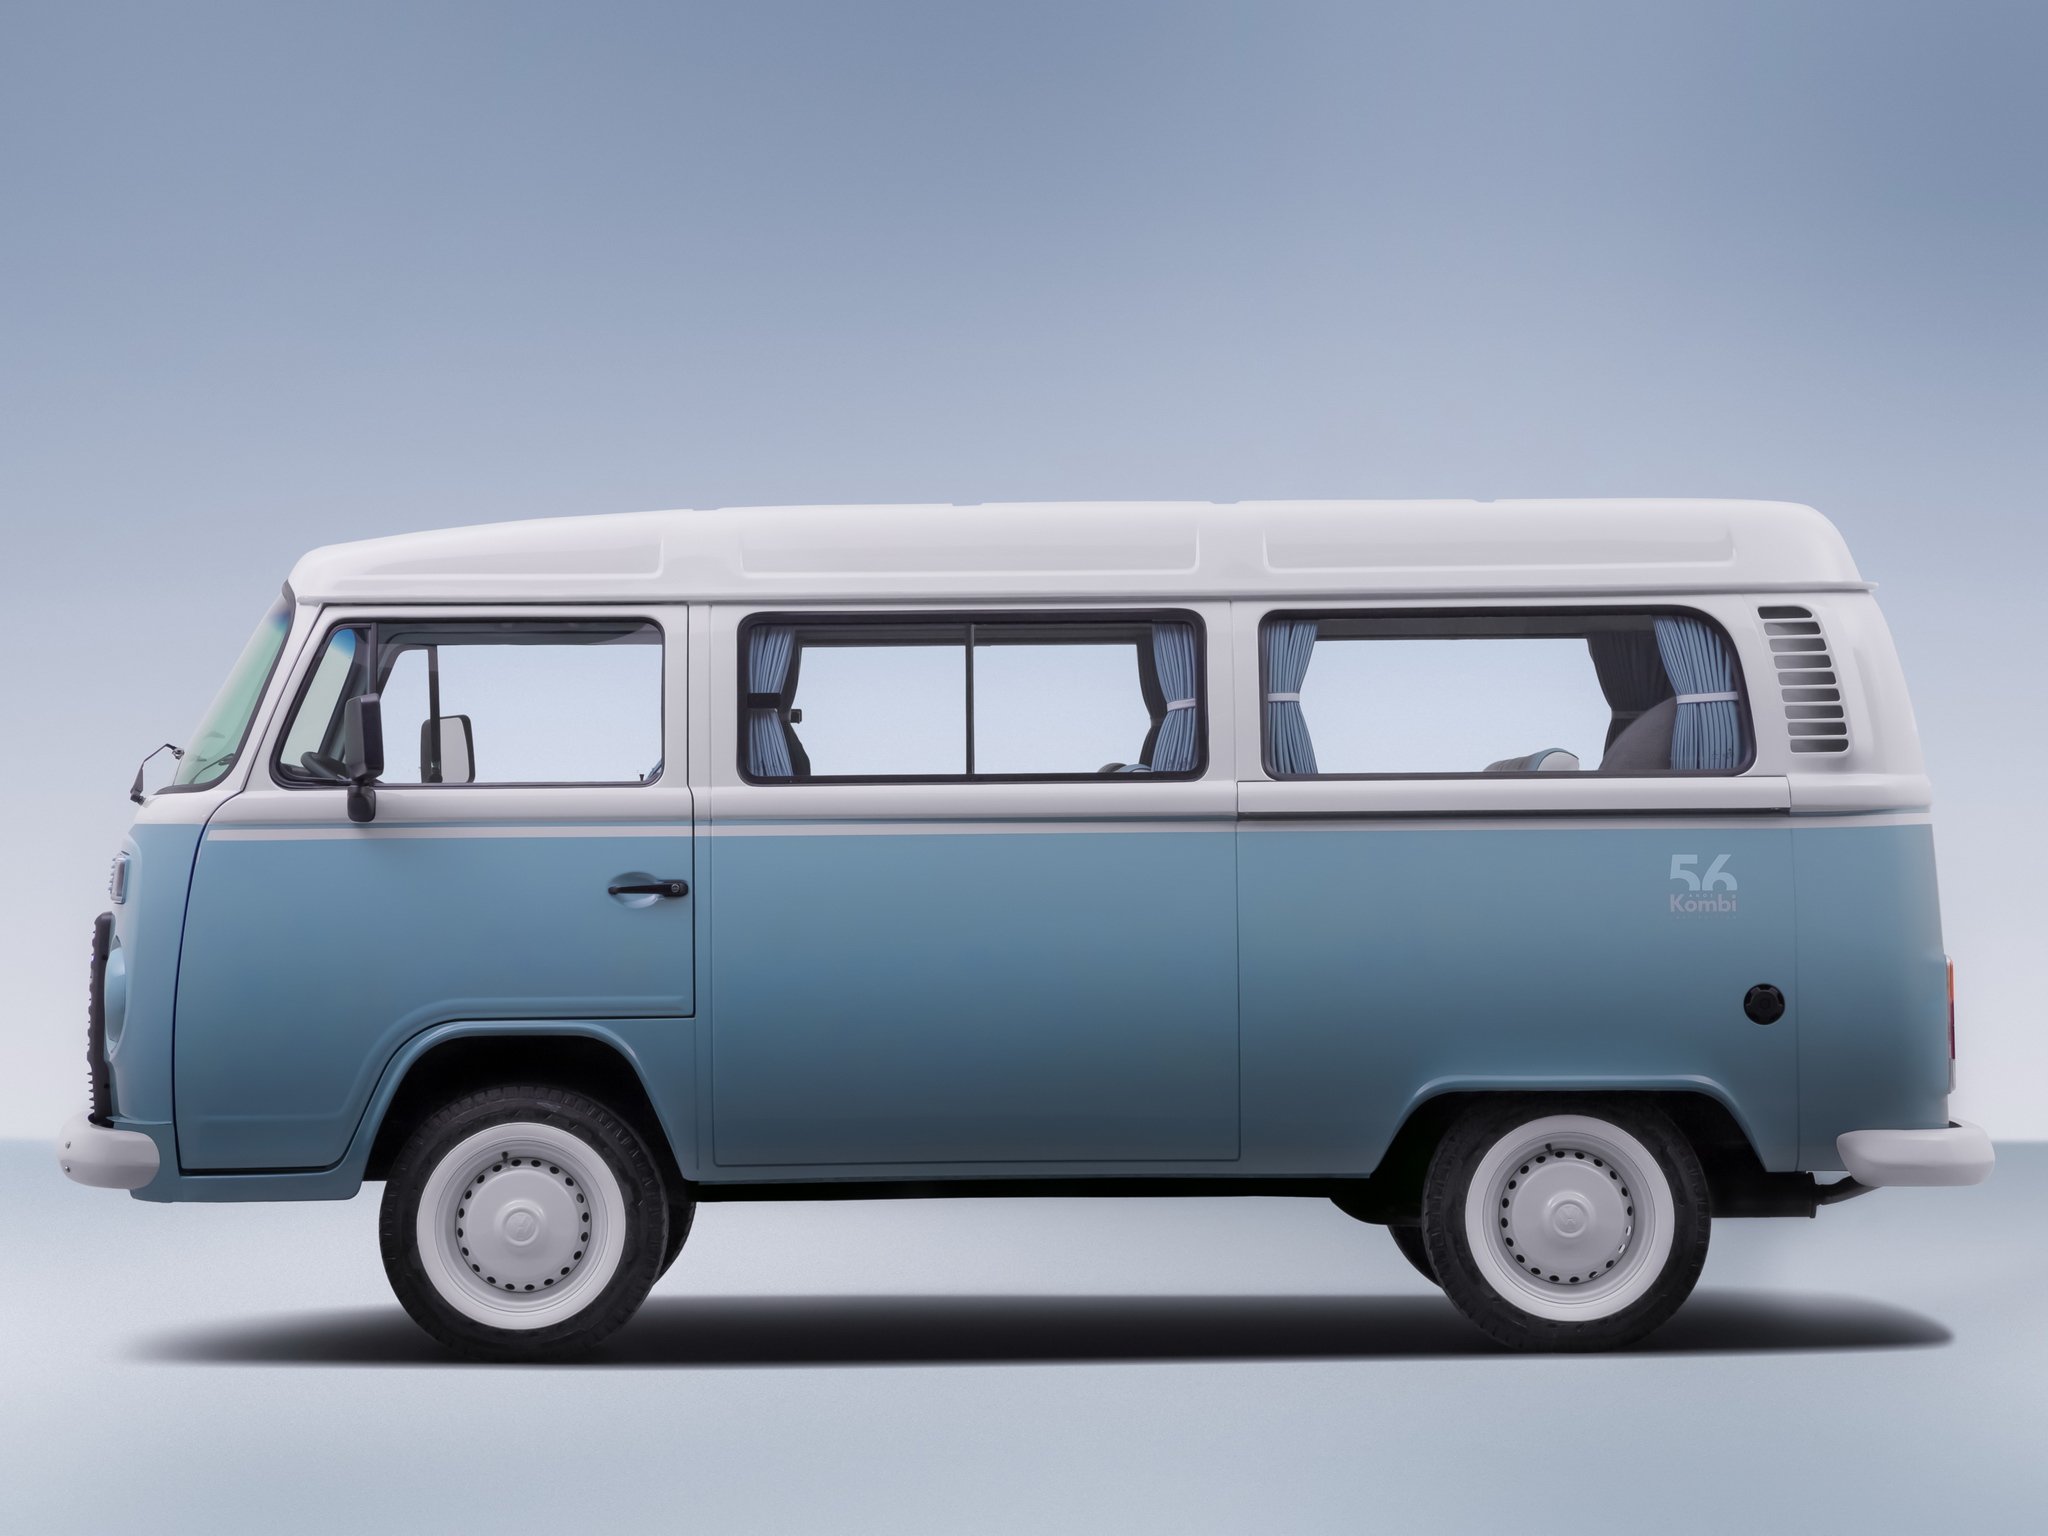 2013, Volkswagen, Kombi, Last, Edition, Bus, Van, Ey Wallpaper